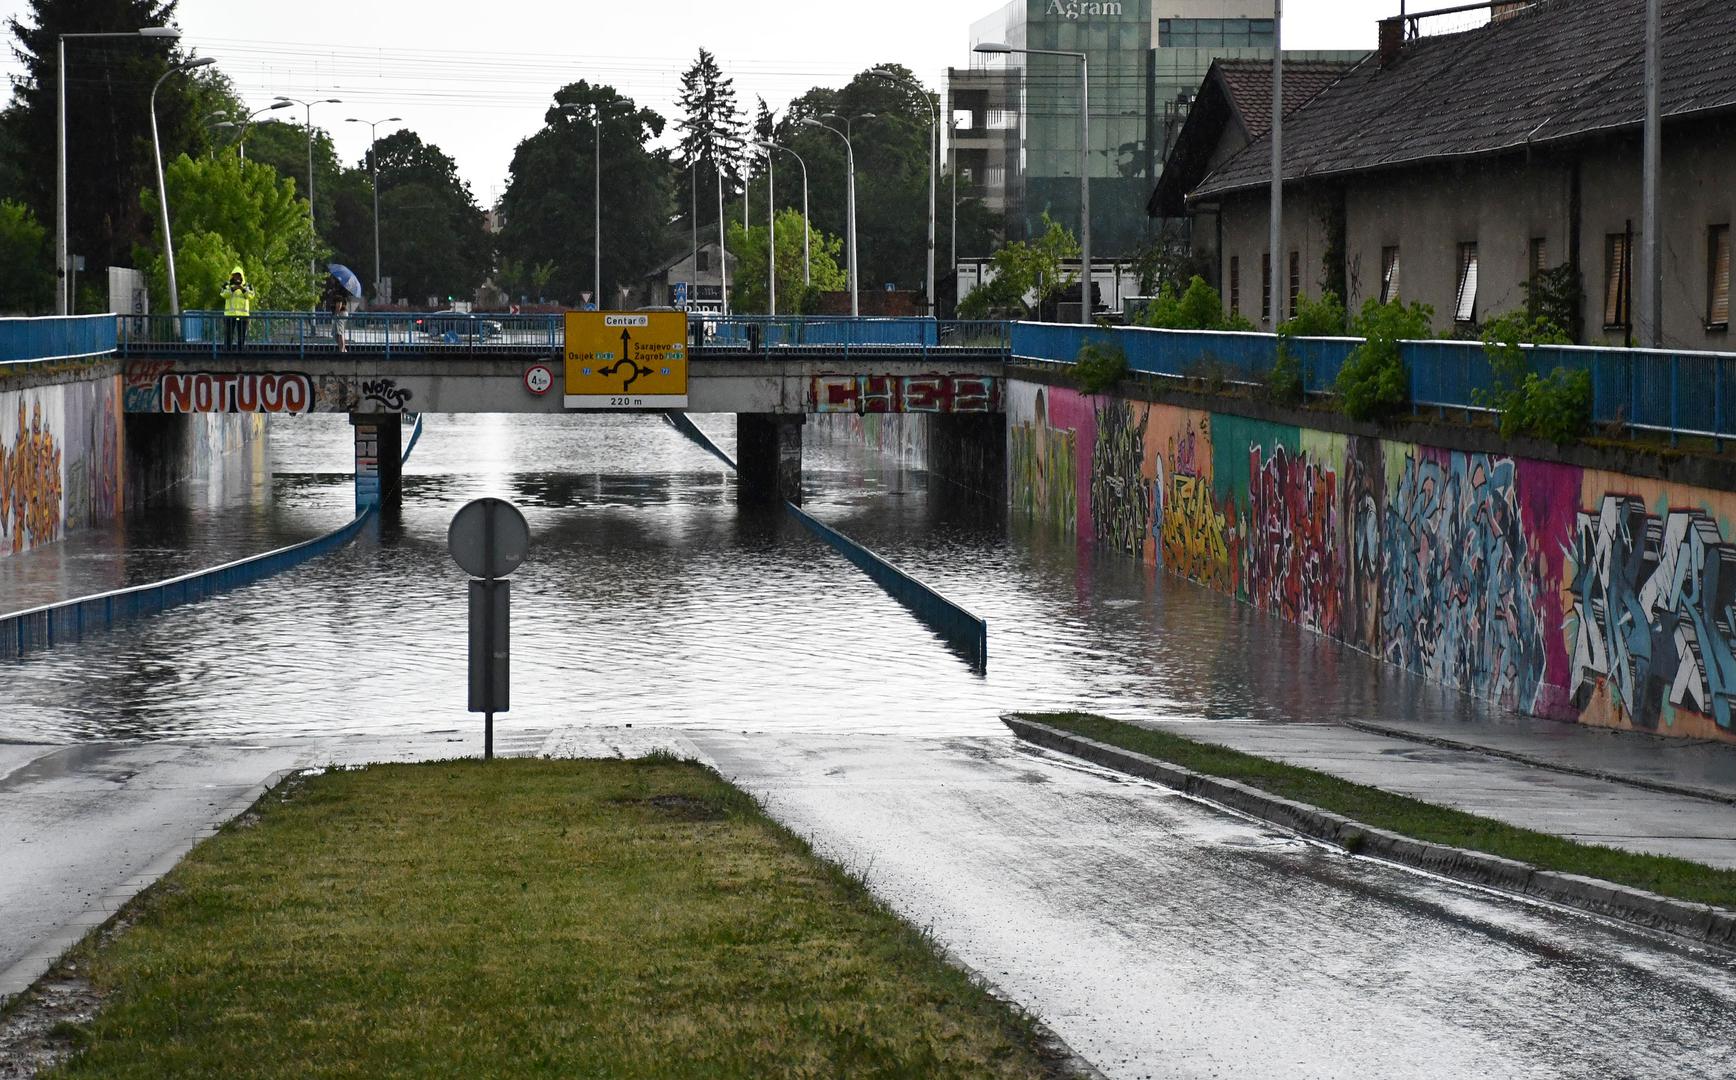 Snažno nevrijeme praćeno tučom i velikom količinom kiše koje je zadesilo Slavonski Brod danas popodne poplavilo je podvožnjake i gradske prometnice.